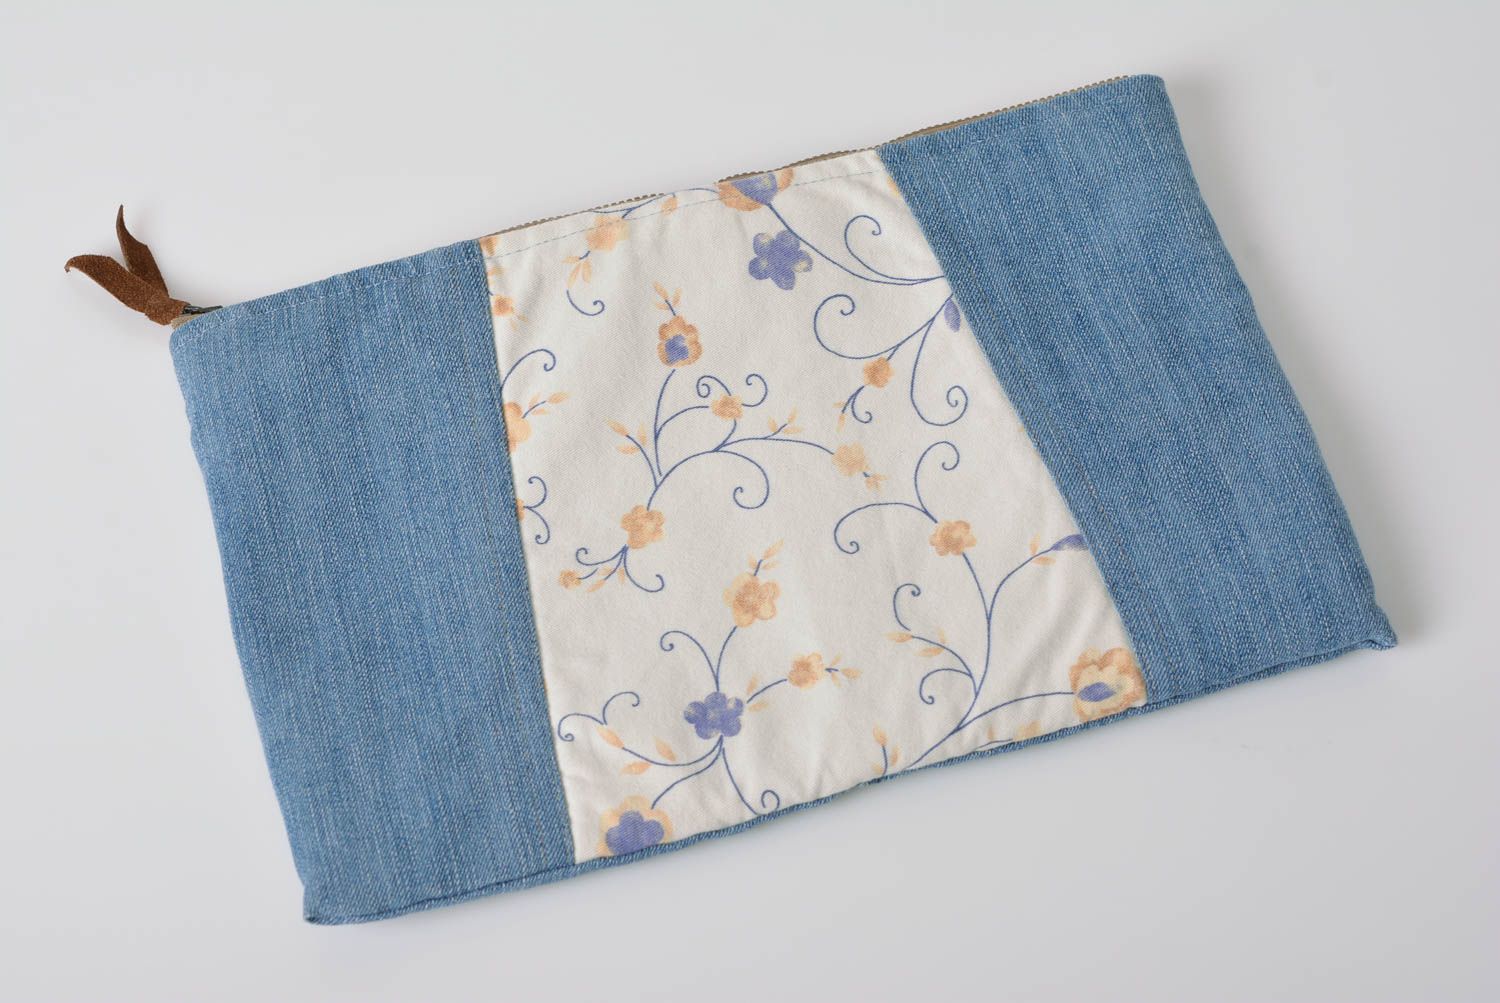 Small handmade fabric clutch bag designer female blue purse evening accessory photo 1